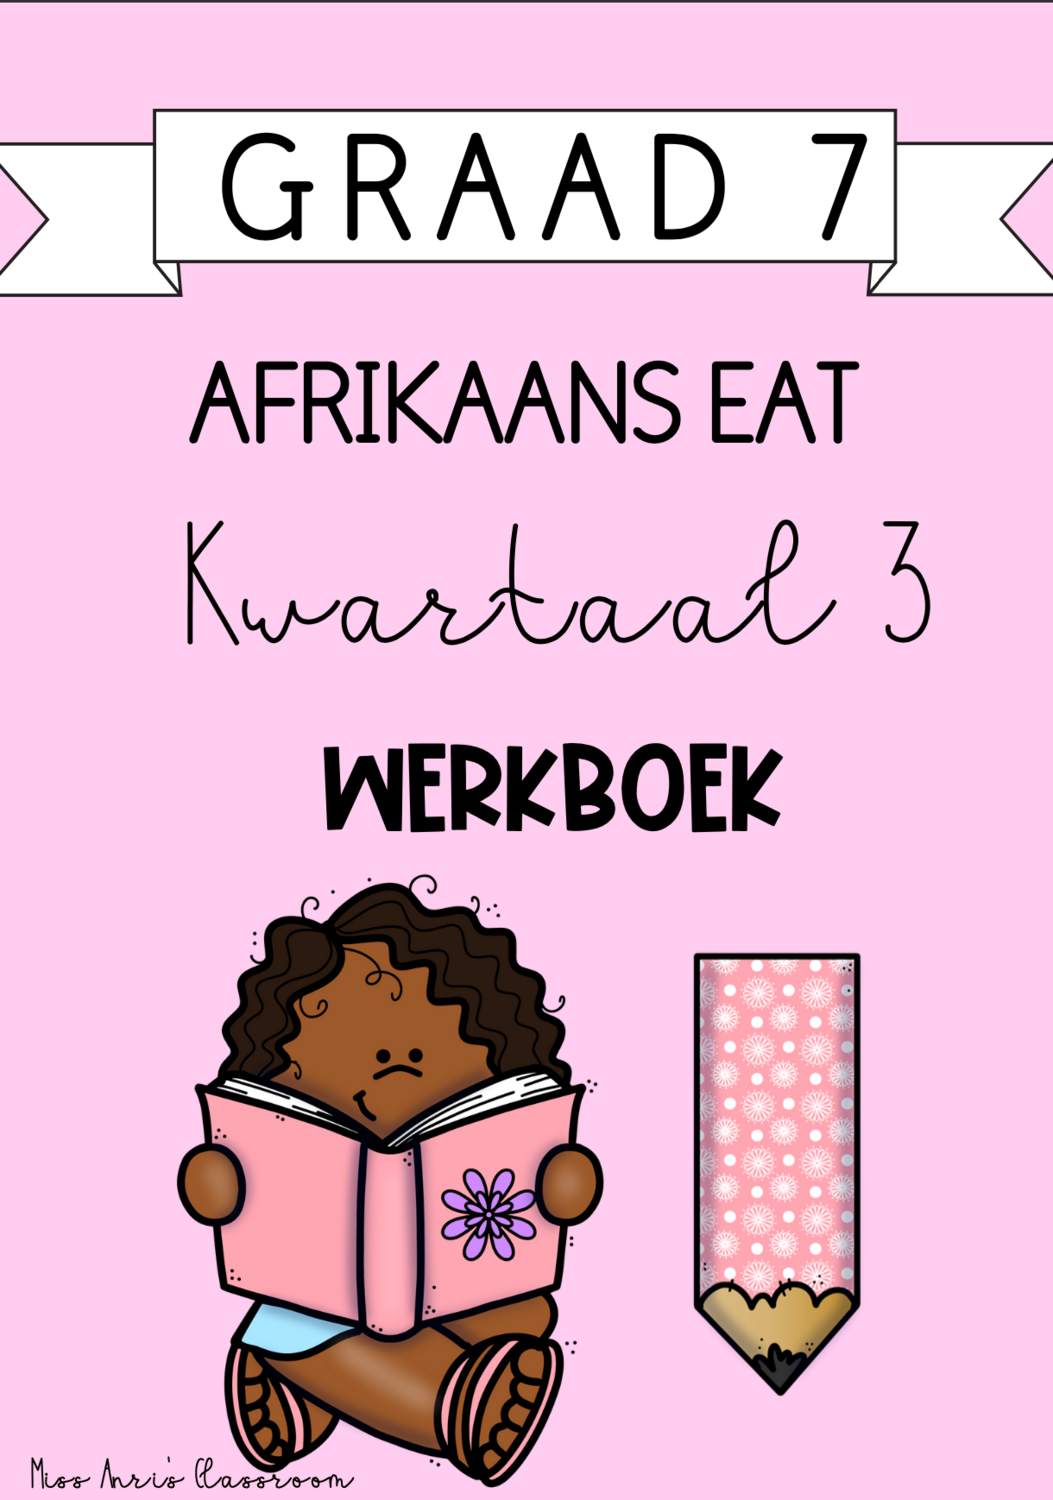 Graad 7 Afrikaans EAT kwartaal 3 werkboek